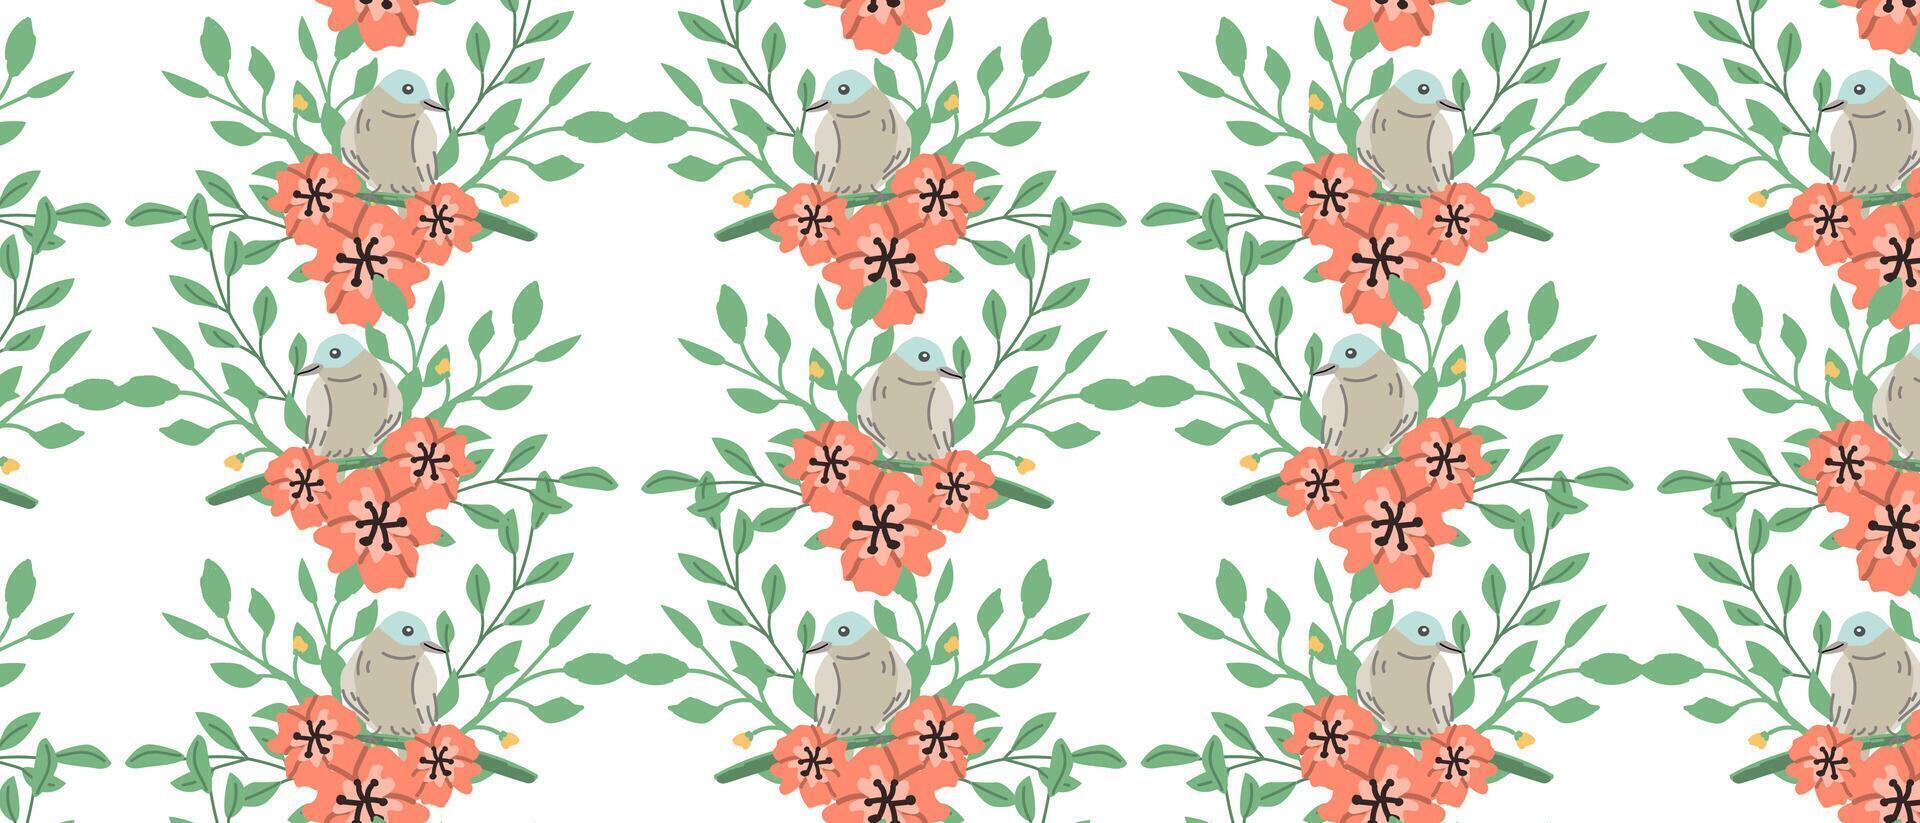 bloemen naadloos patroon met vogel ditsy roze bloemen. vector illustratie in wijnoogst stijl. elegant ontwerp voor textiel, interieur decoratie. roze madeliefje bloemen en bladeren en vogel naadloos achtergrond.